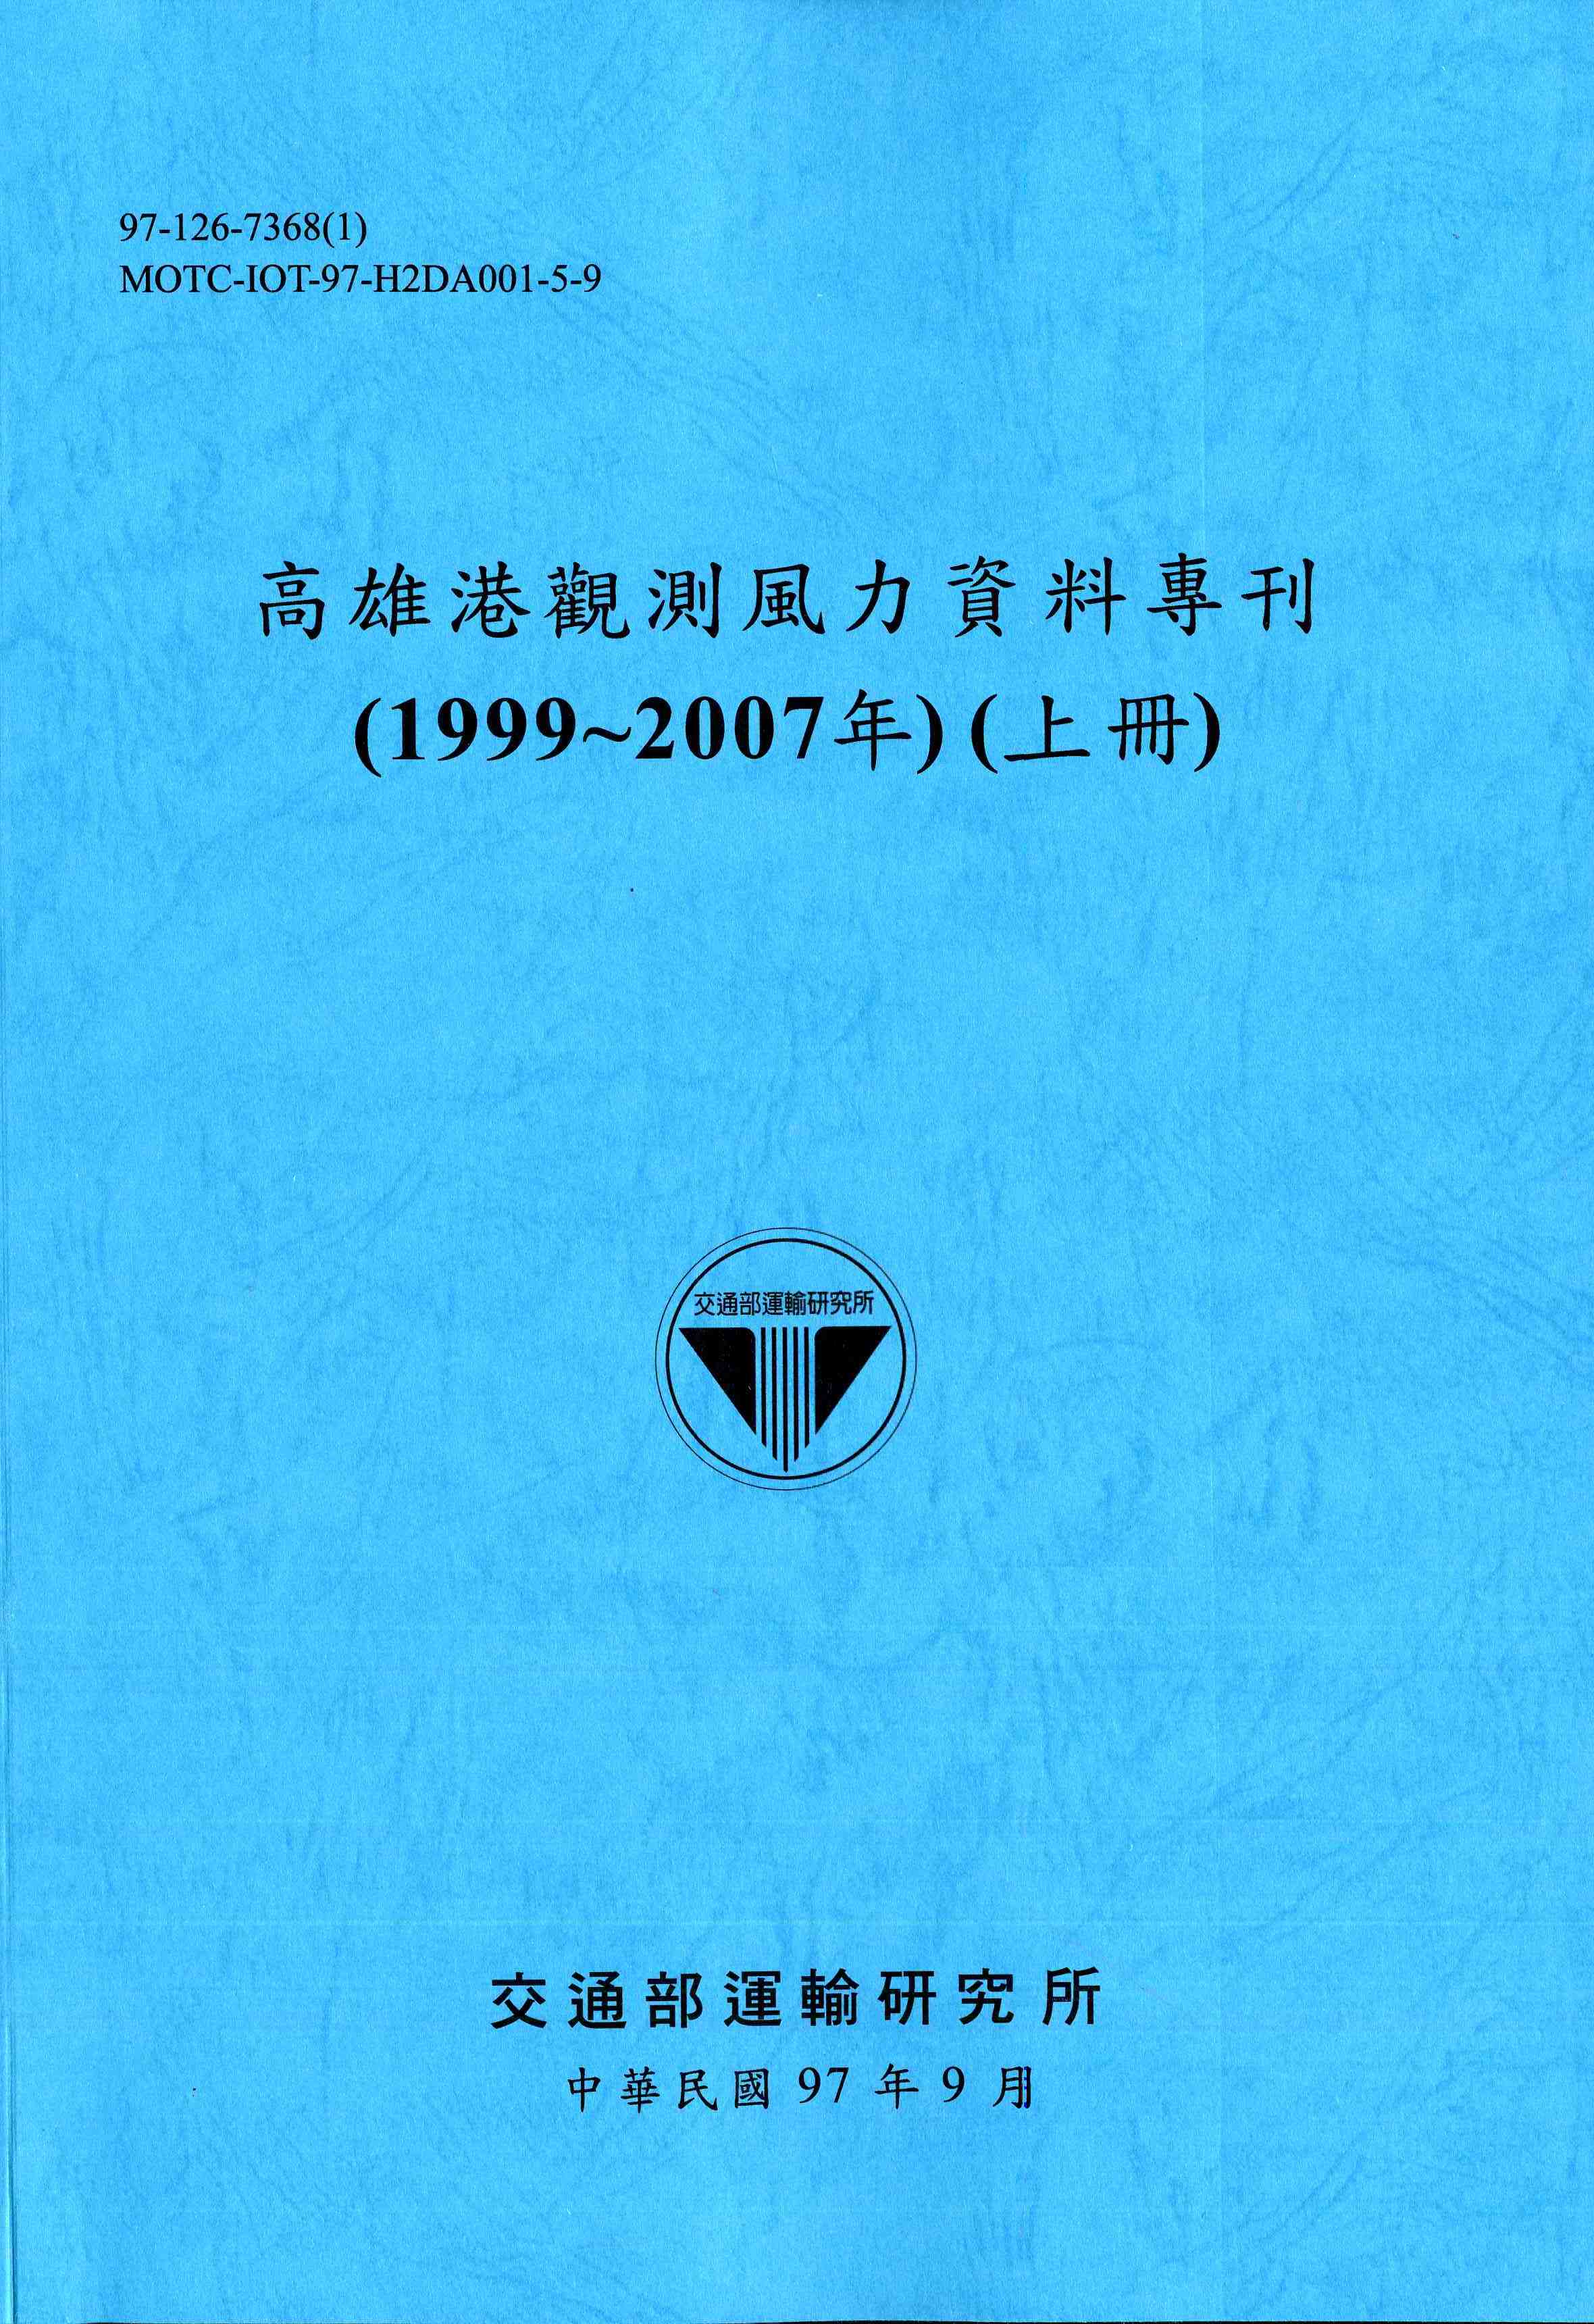 高雄港觀測風力資料專刊(1999~2007年)(上冊)